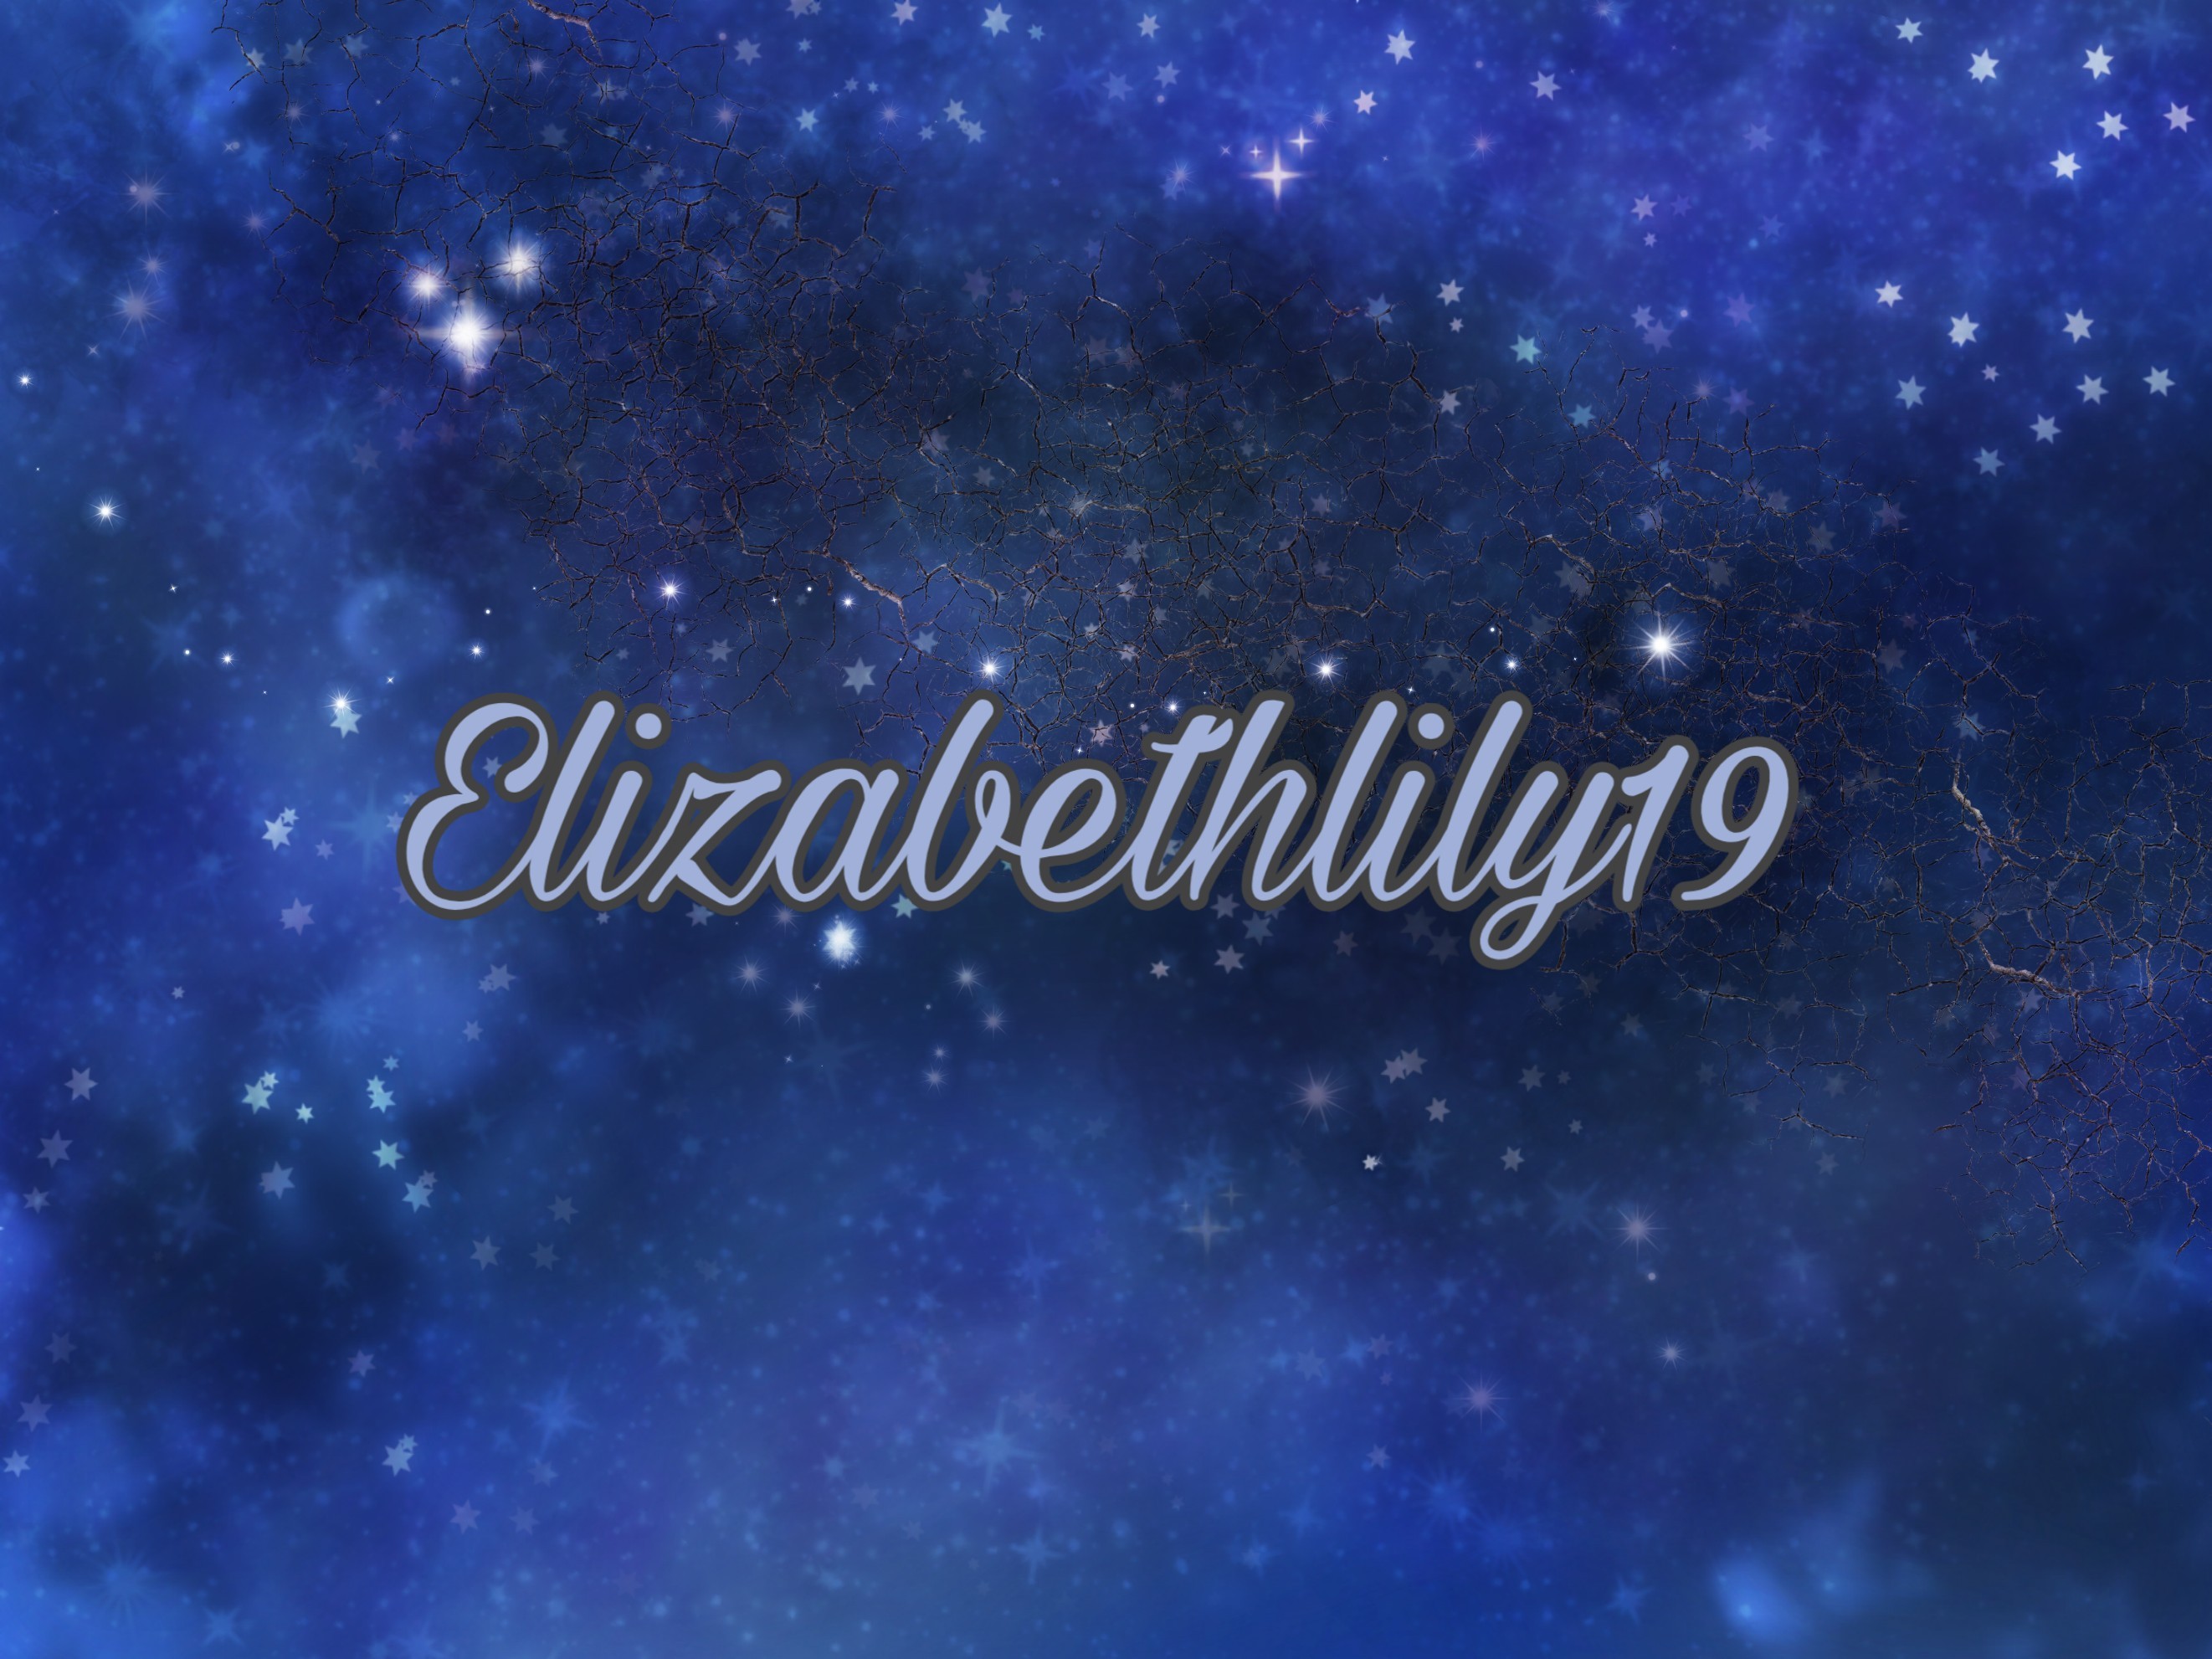 elizabethlily19